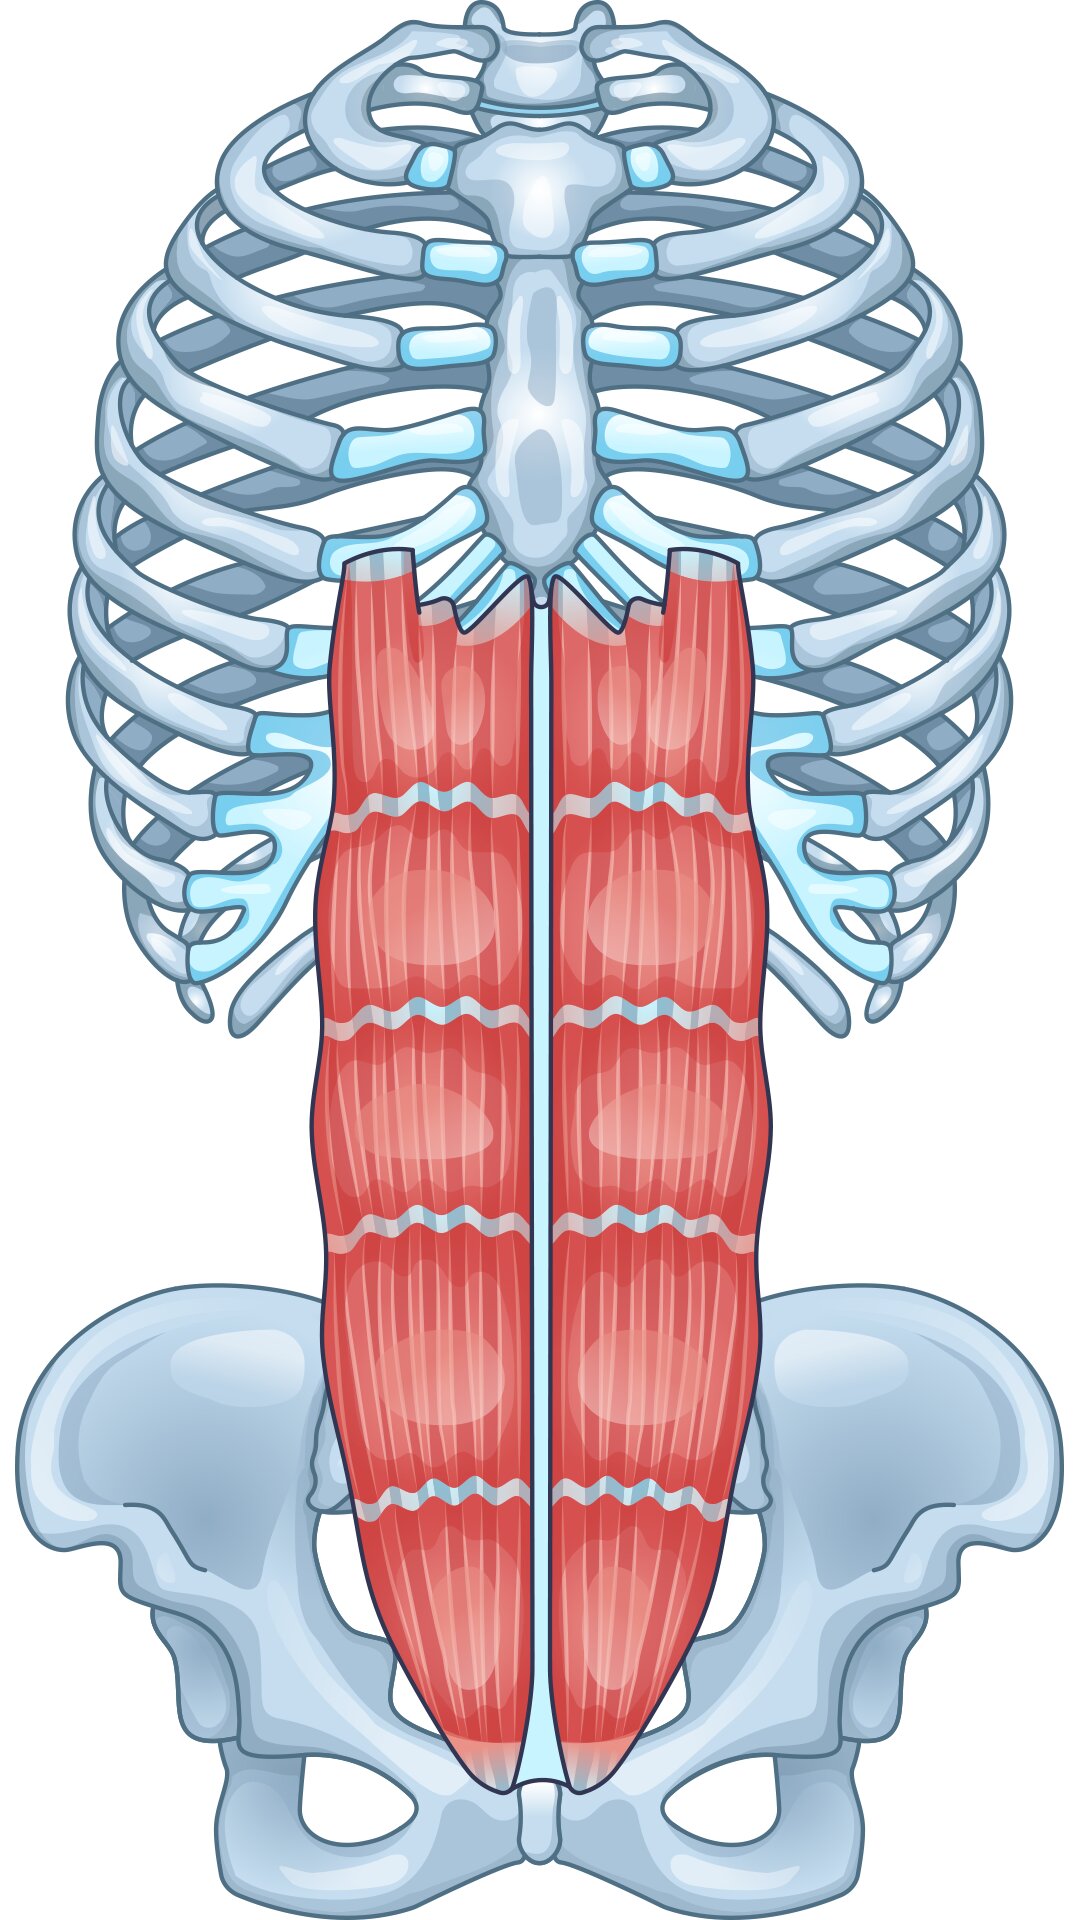 腹筋は意外と長く恥骨から肋骨の真ん中付近まである